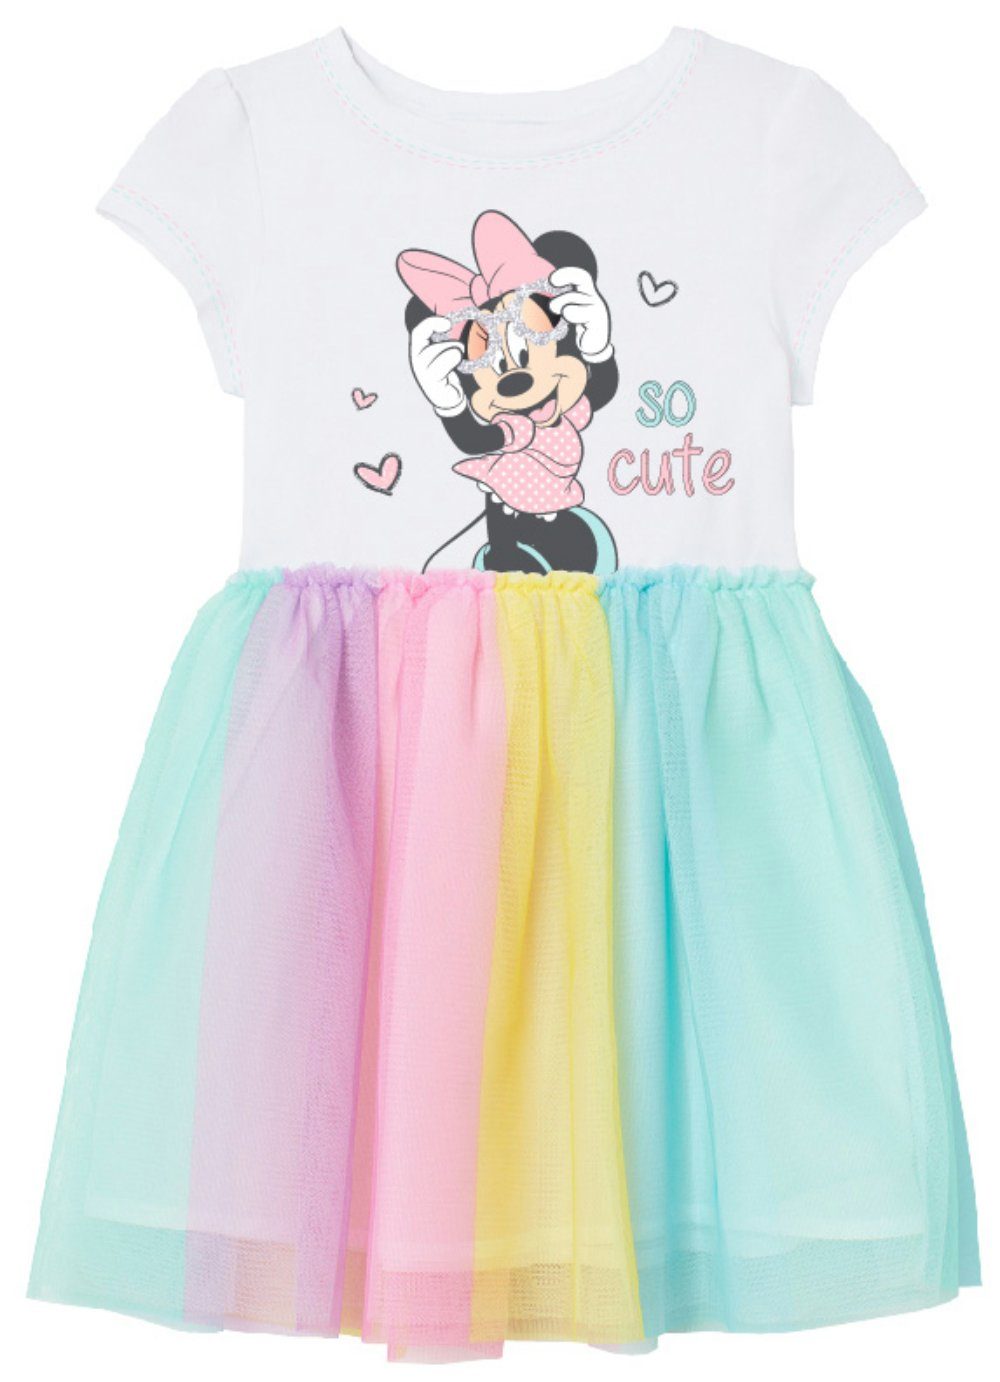 Baumwolle Mouse bis Disney Minnie 104 134, Maus Minnie - Regenbogen Kinder Mädchen Tüllkleid Kleid Gr.